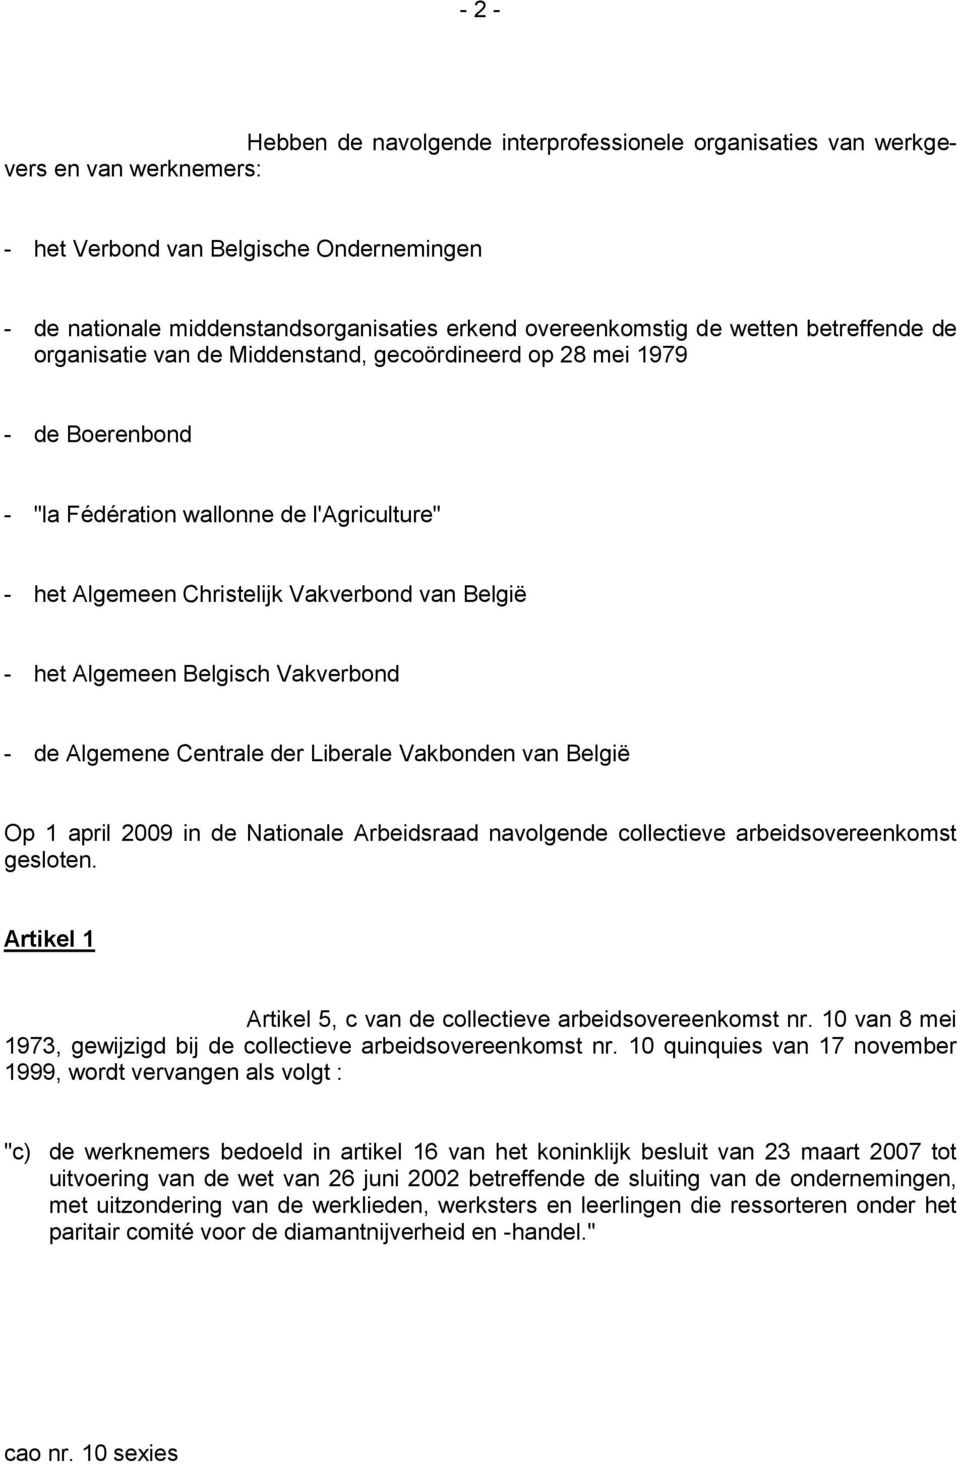 Algemeen Belgisch Vakverbond - de Algemene Centrale der Liberale Vakbonden van België Op 1 april 2009 in de Nationale Arbeidsraad navolgende collectieve arbeidsovereenkomst gesloten.